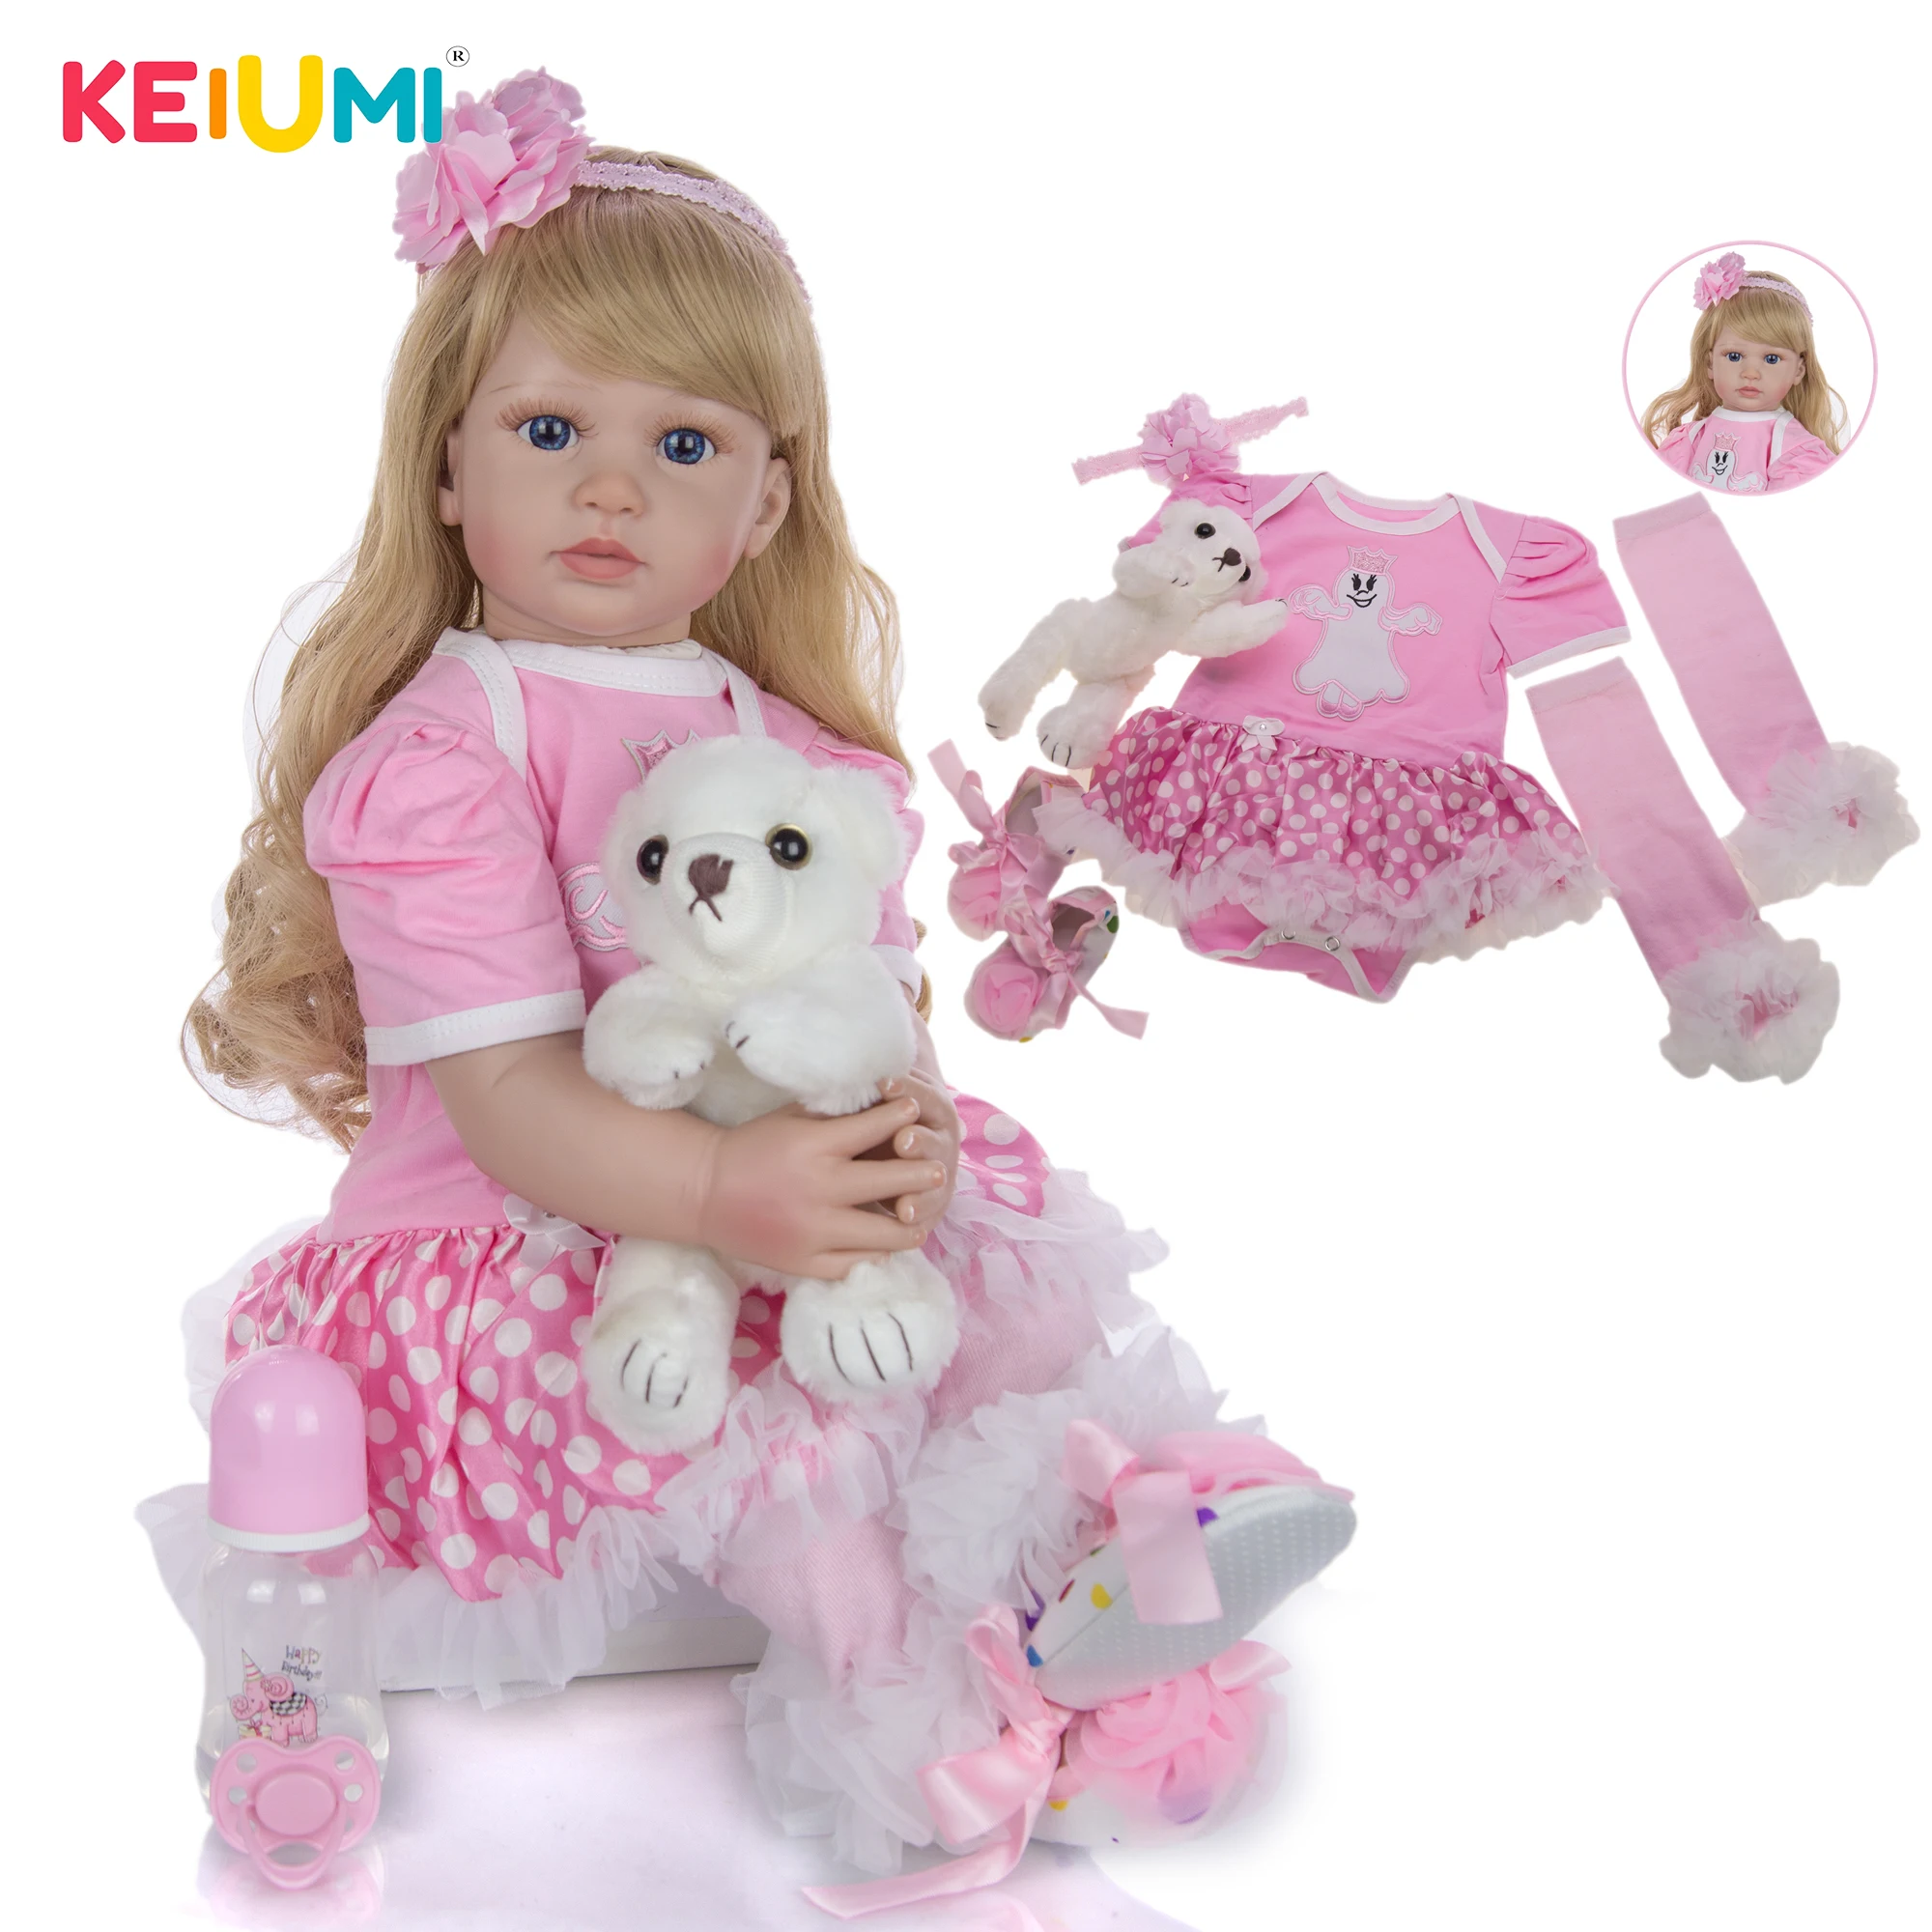 KEIUMI милая кукла для новорожденной принцессы, милая мягкая виниловая ткань, Имитация тела, 60 см, кукла, детская игрушка, модный детский Рождественский подарок